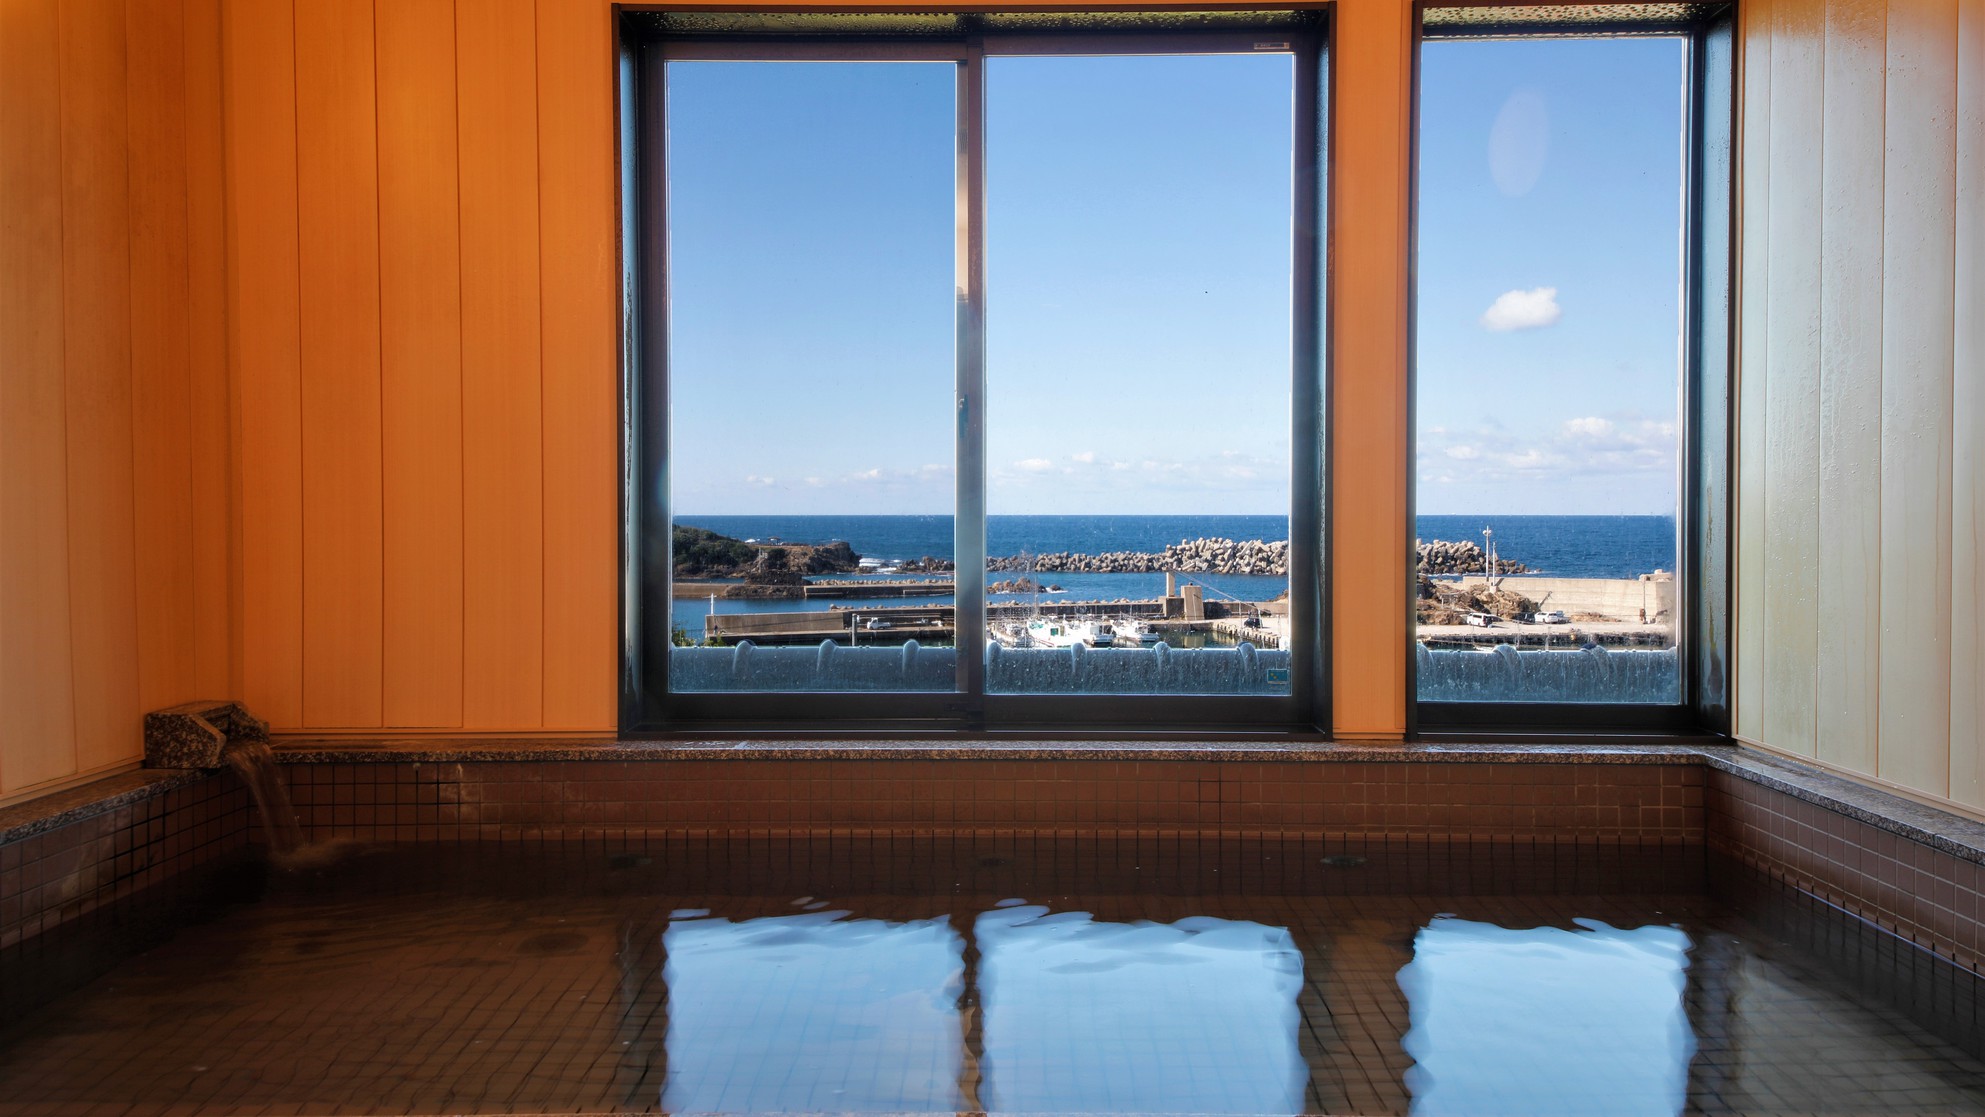 【大浴場】間人港と日本海を一望しながら、温泉の大浴場でゆったりとした時間を。